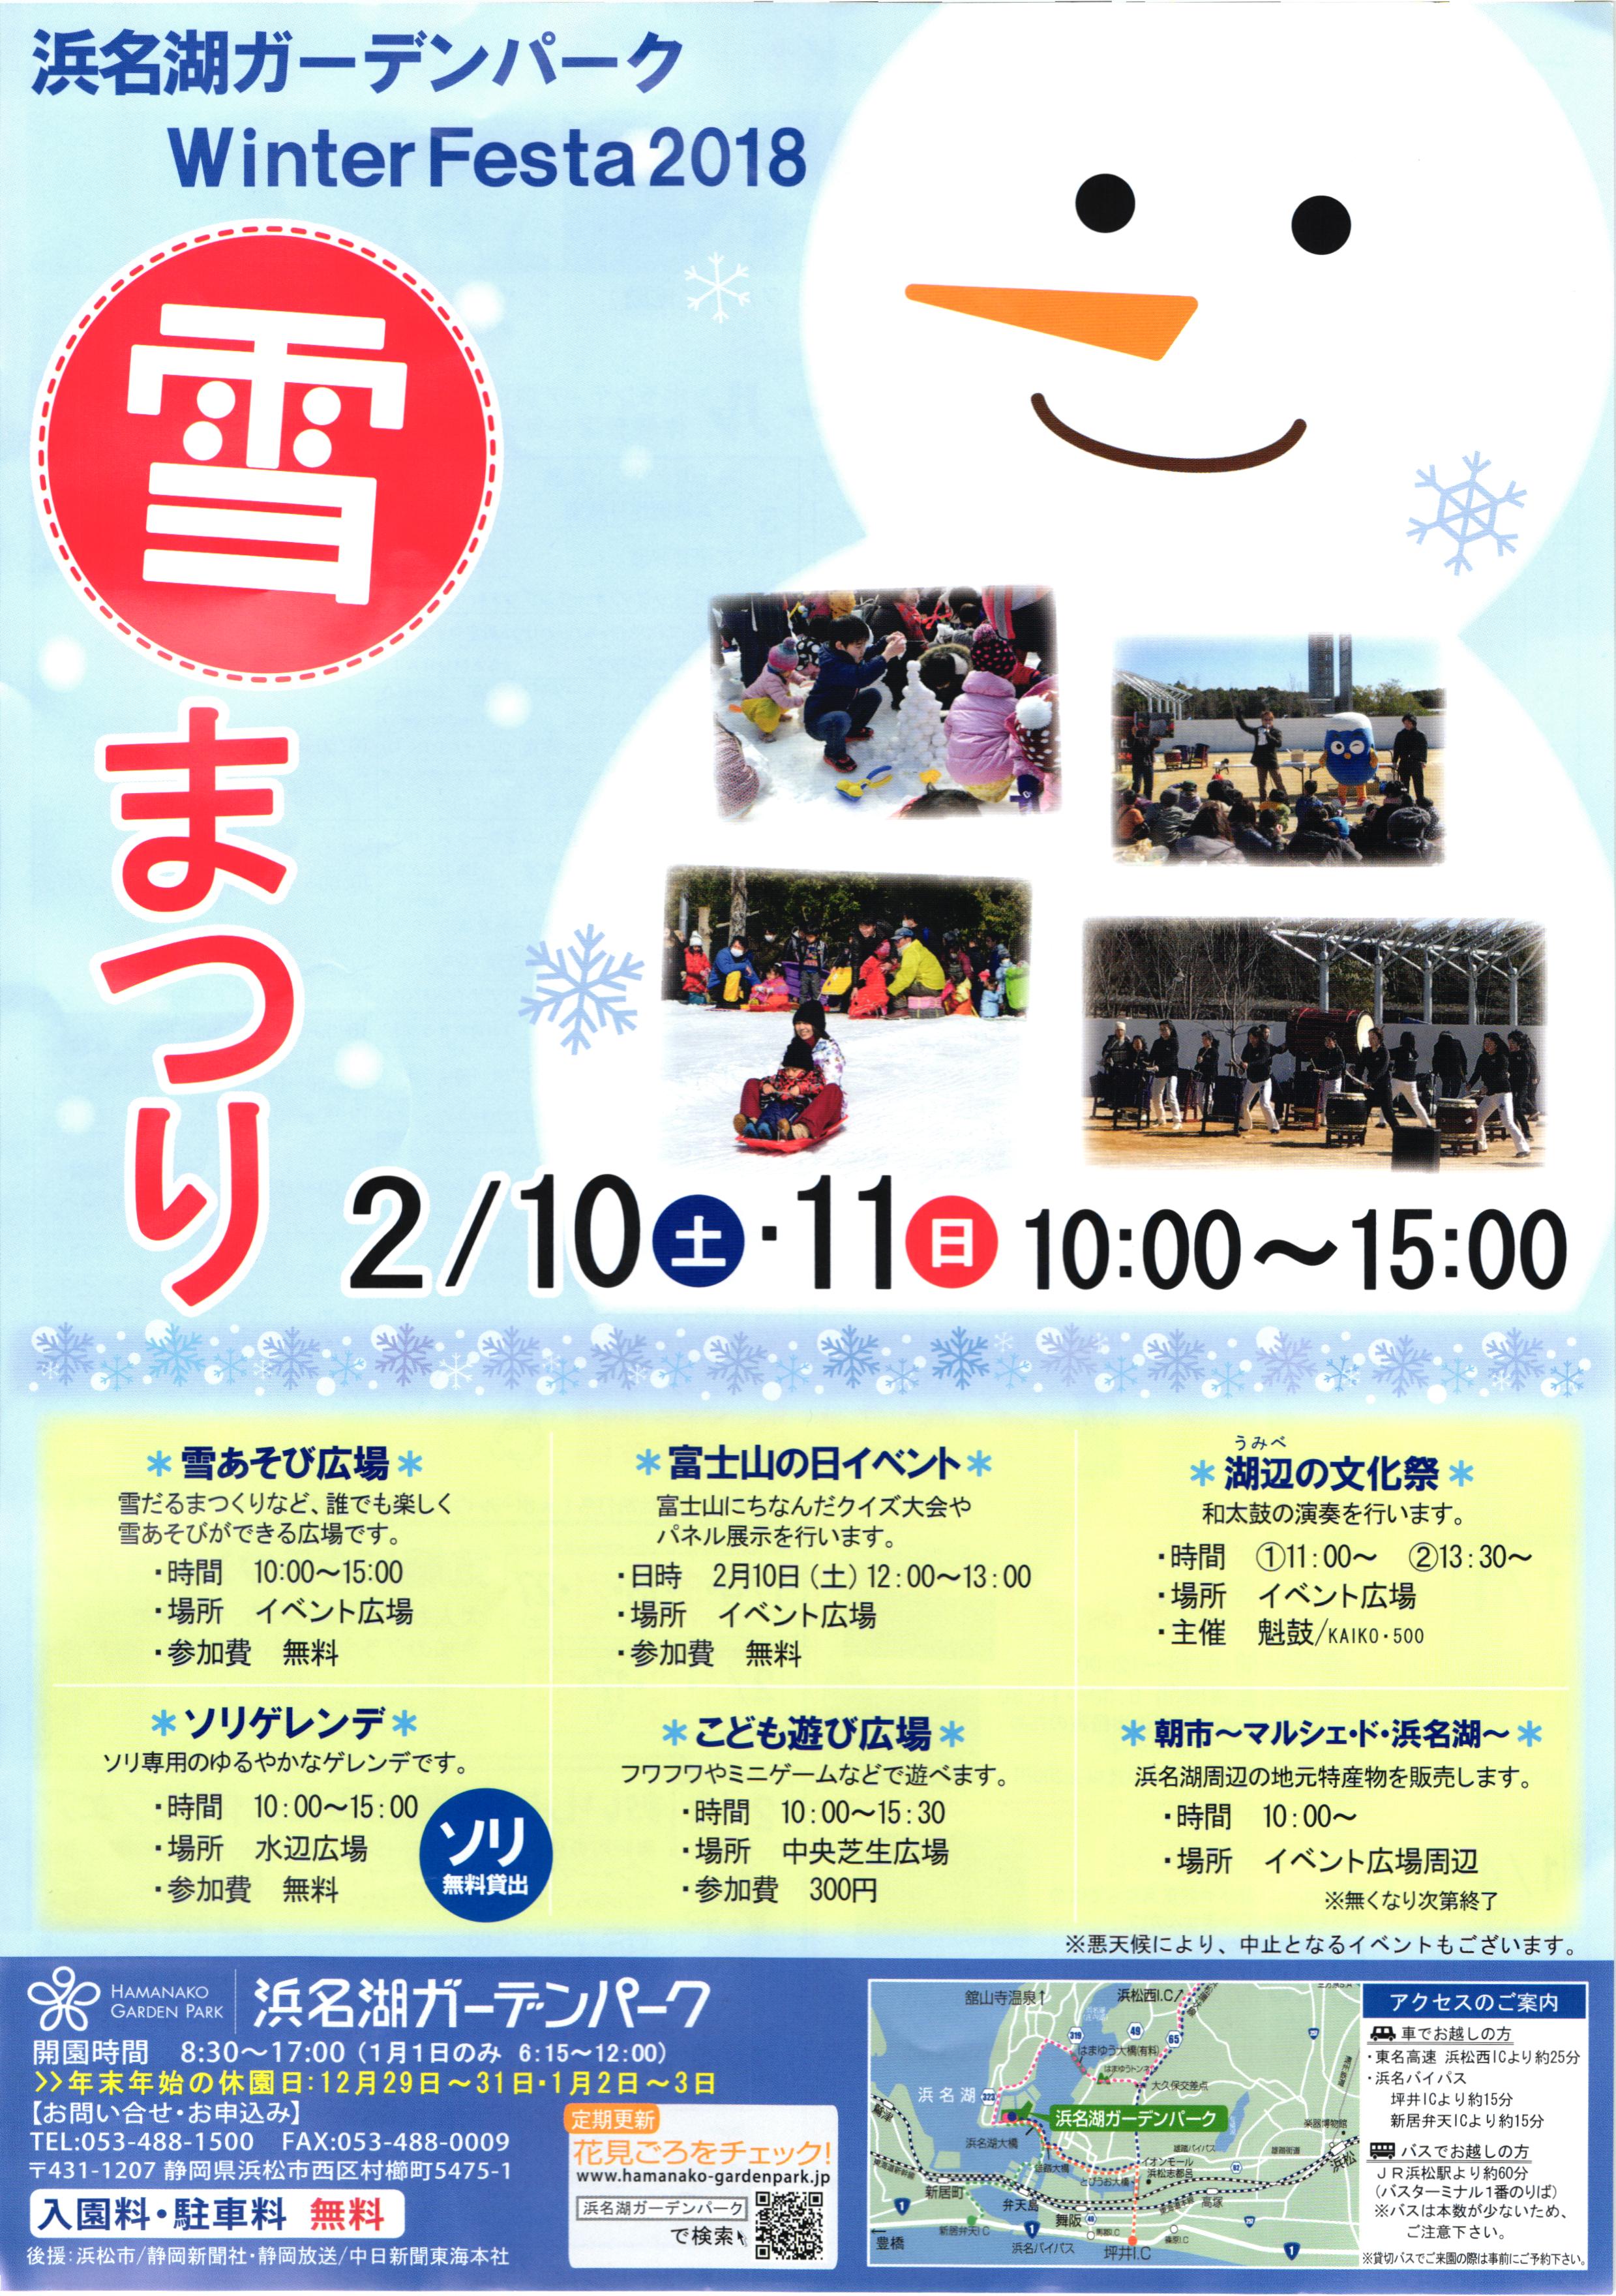 Winter Festa 2018『 雪まつり 』浜名湖ガーデンパーク